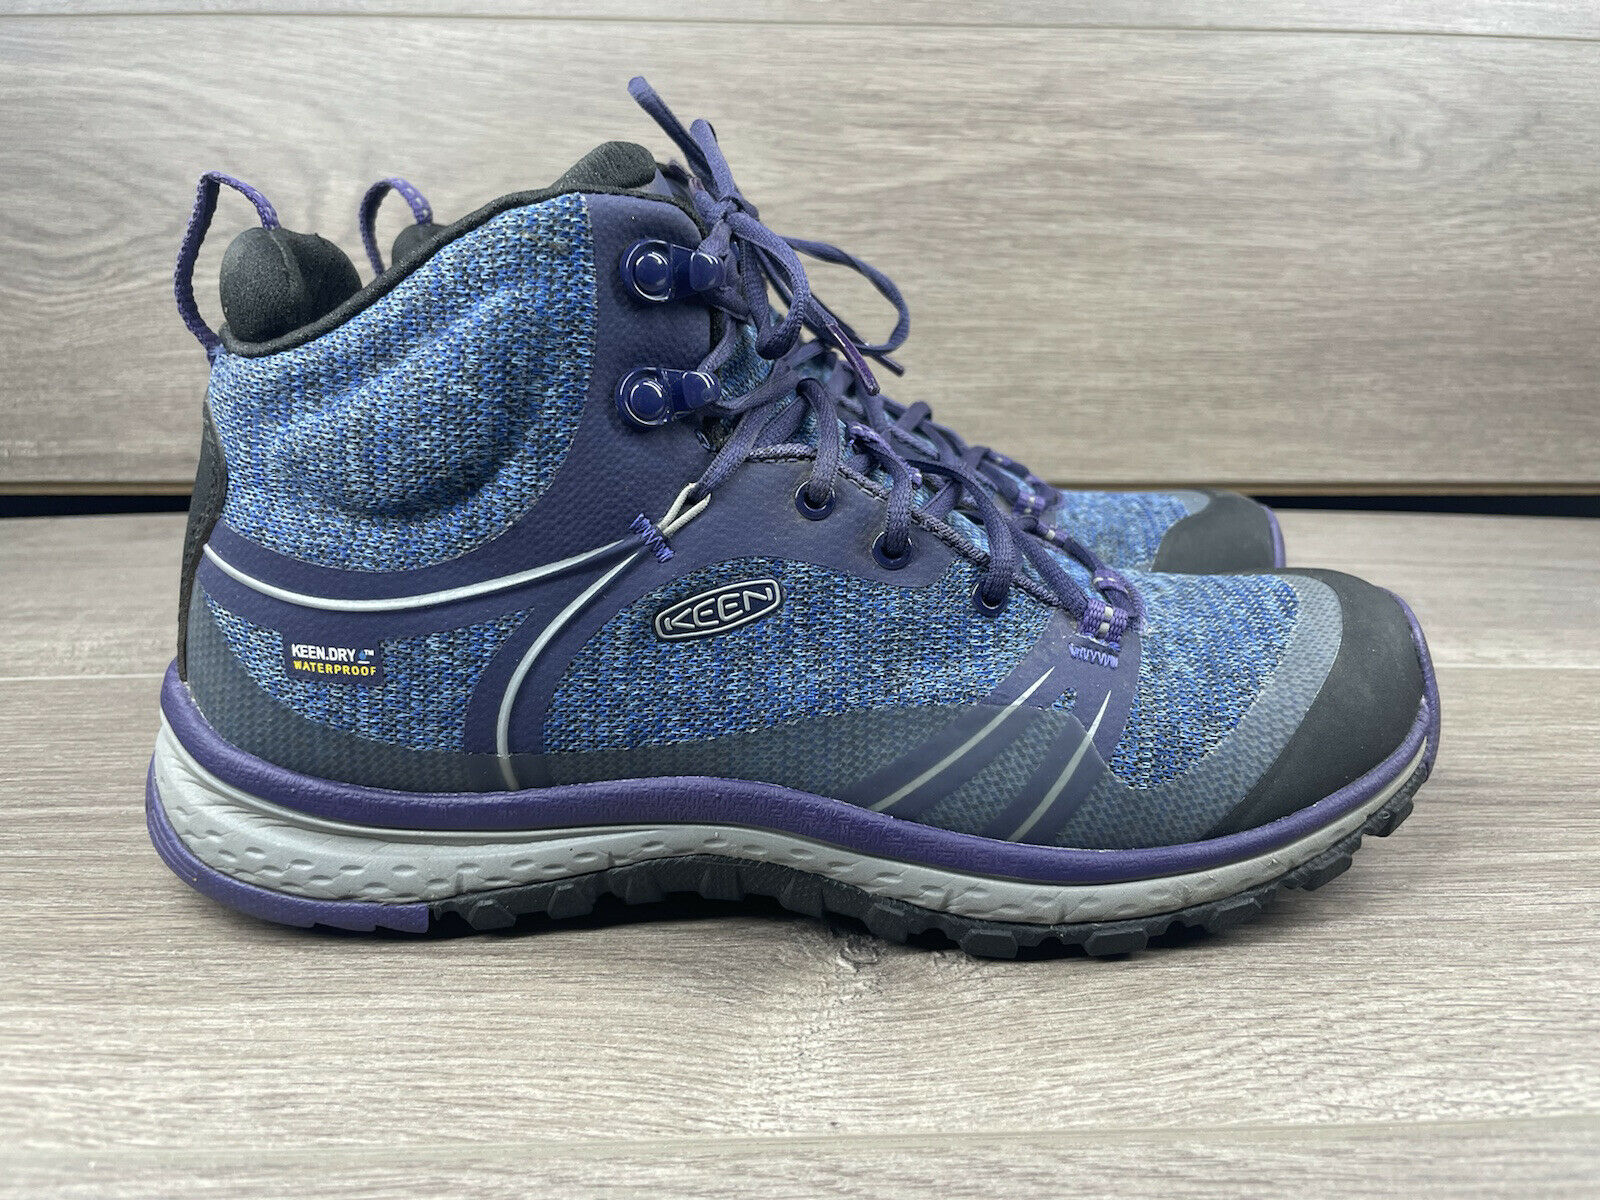 Keen Terradora II Mid Hiking Boots Waterproof 1016502 Blue Women’s Size 8 US